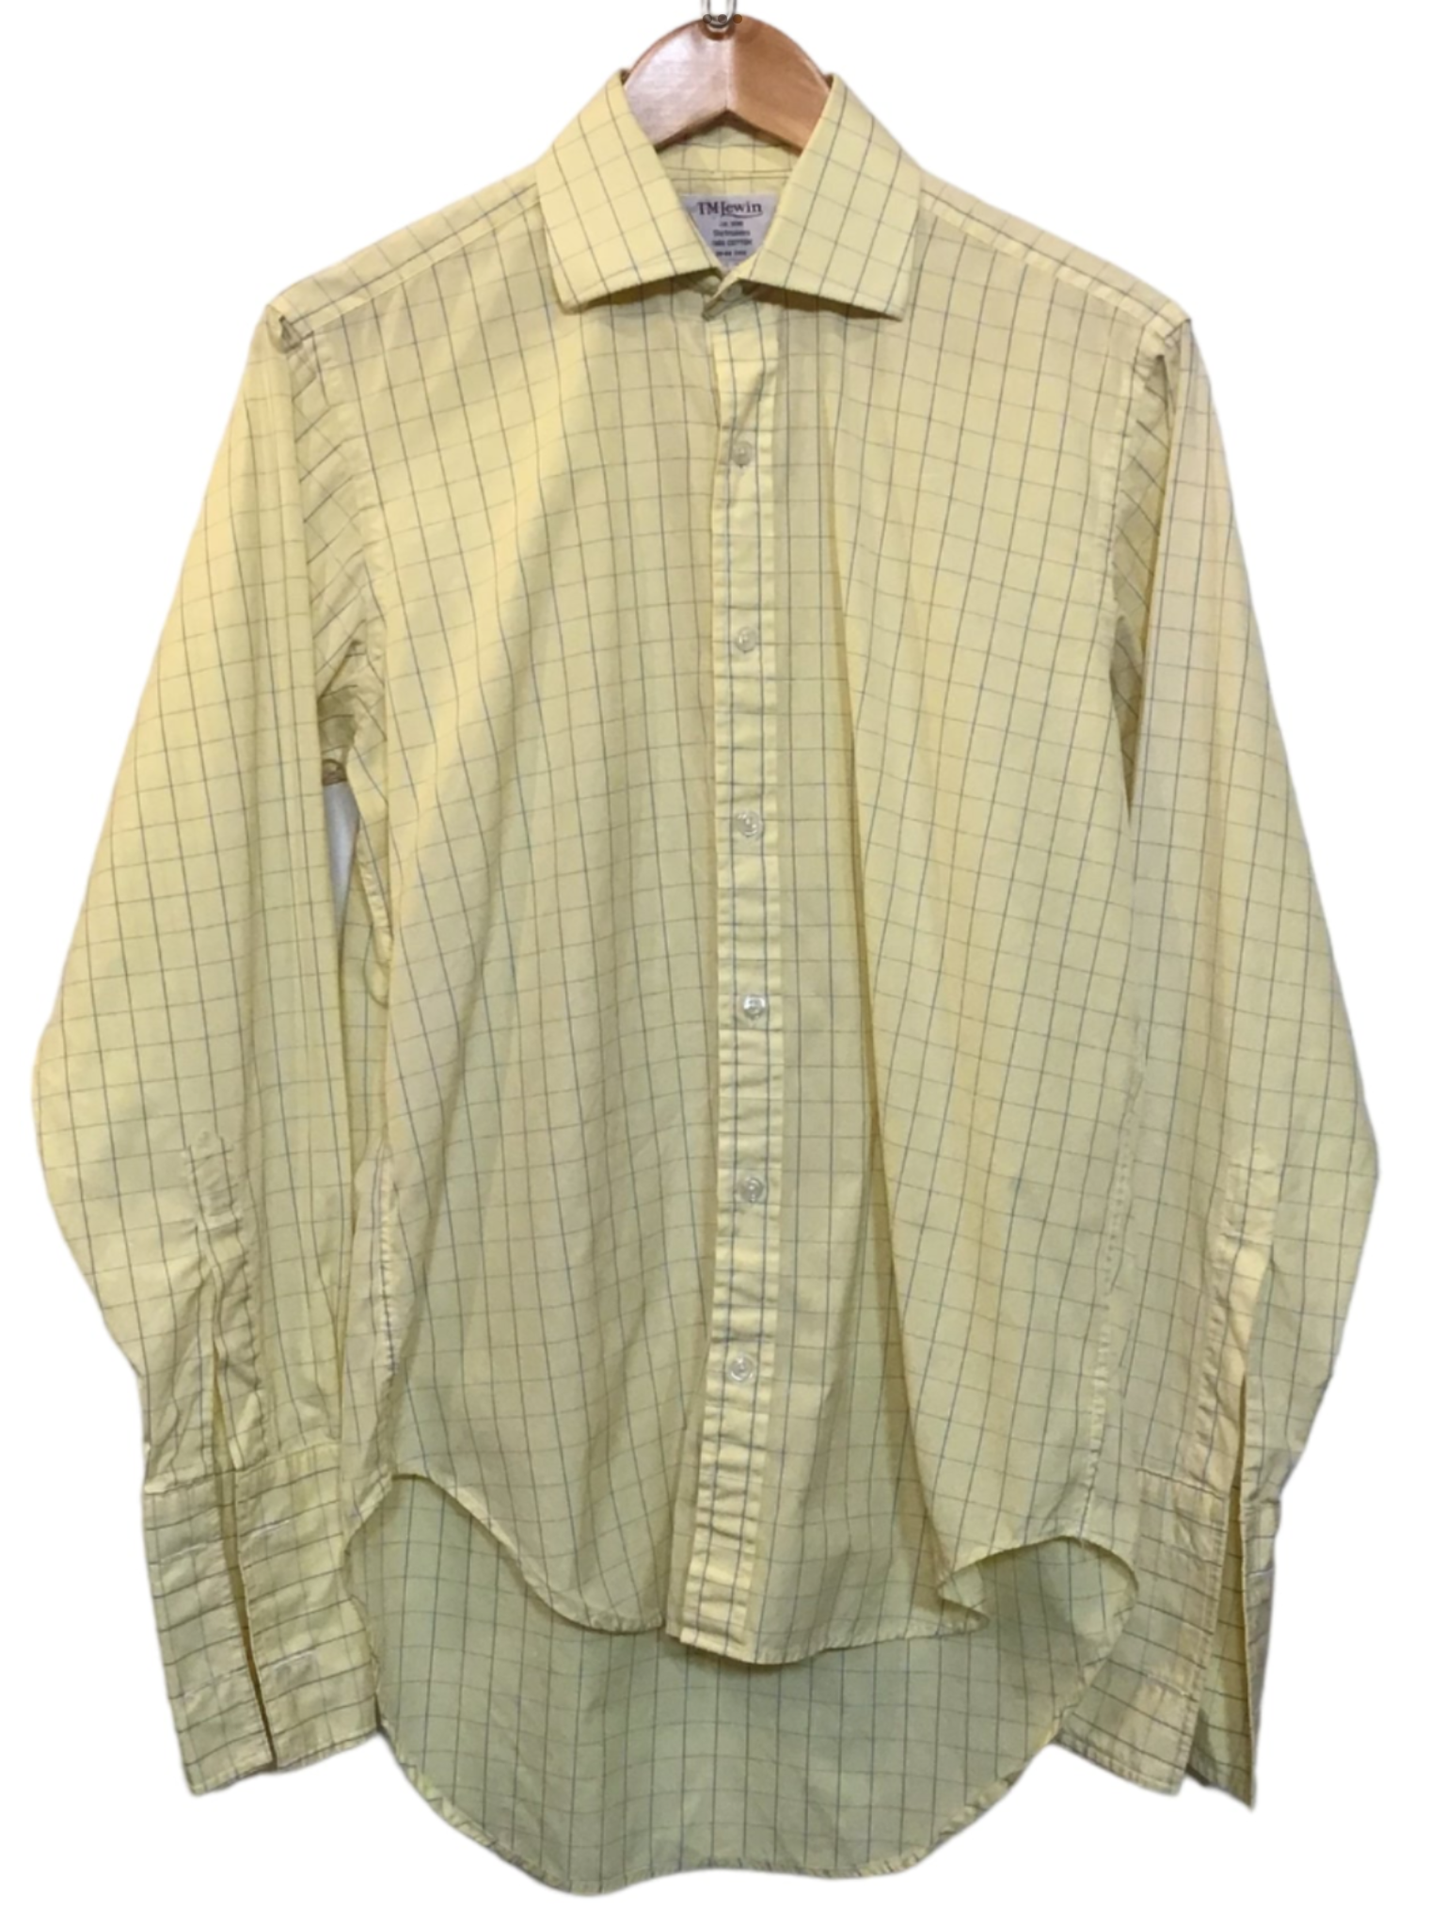 T.M. Lewin Shirt (Size L)